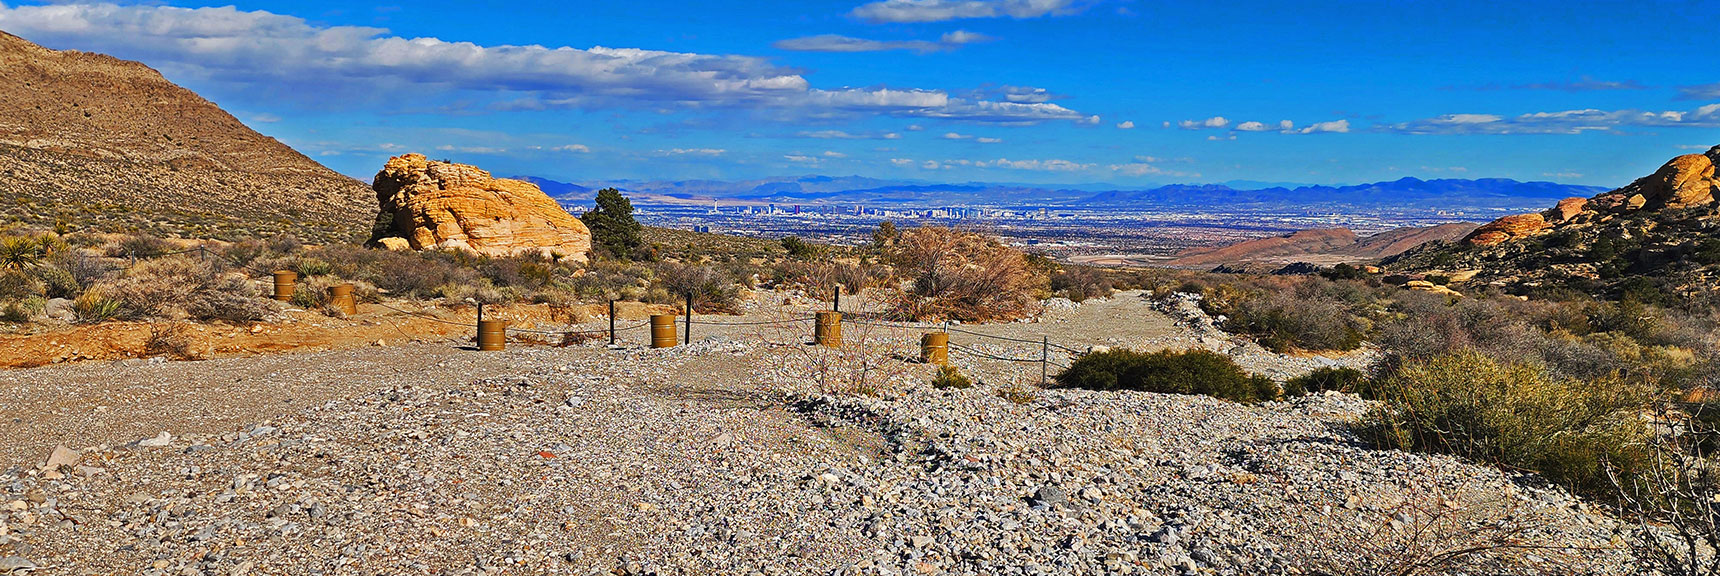 Brownstone Trial Ends, Road Begins at Motor Vehicle Barrier. | Damsel Peak Loop | Gateway Peak | Brownstone Basin, Nevada